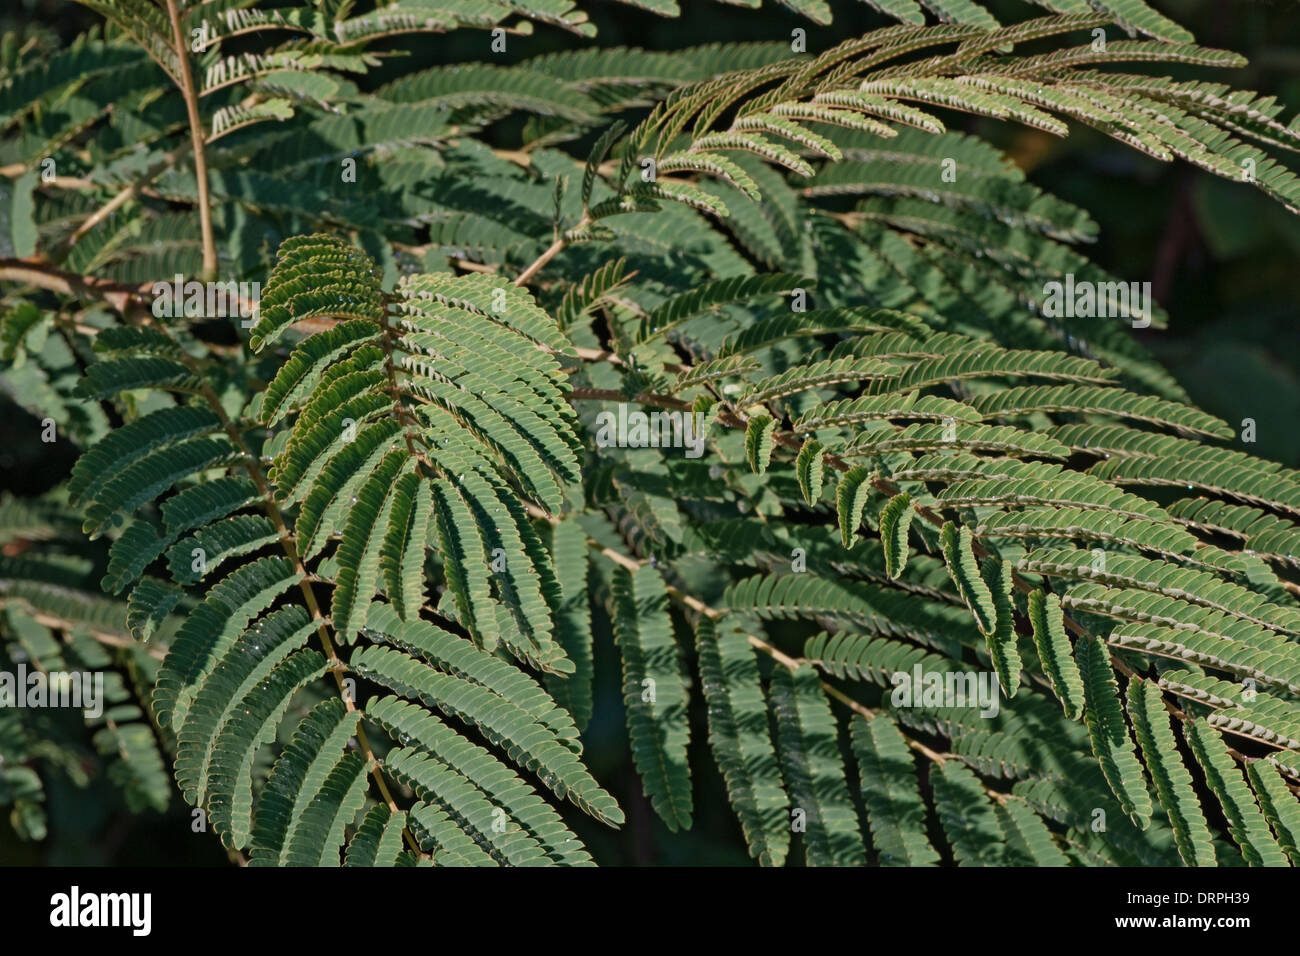 Silktree (Albizia julibrissin) Stock Photo